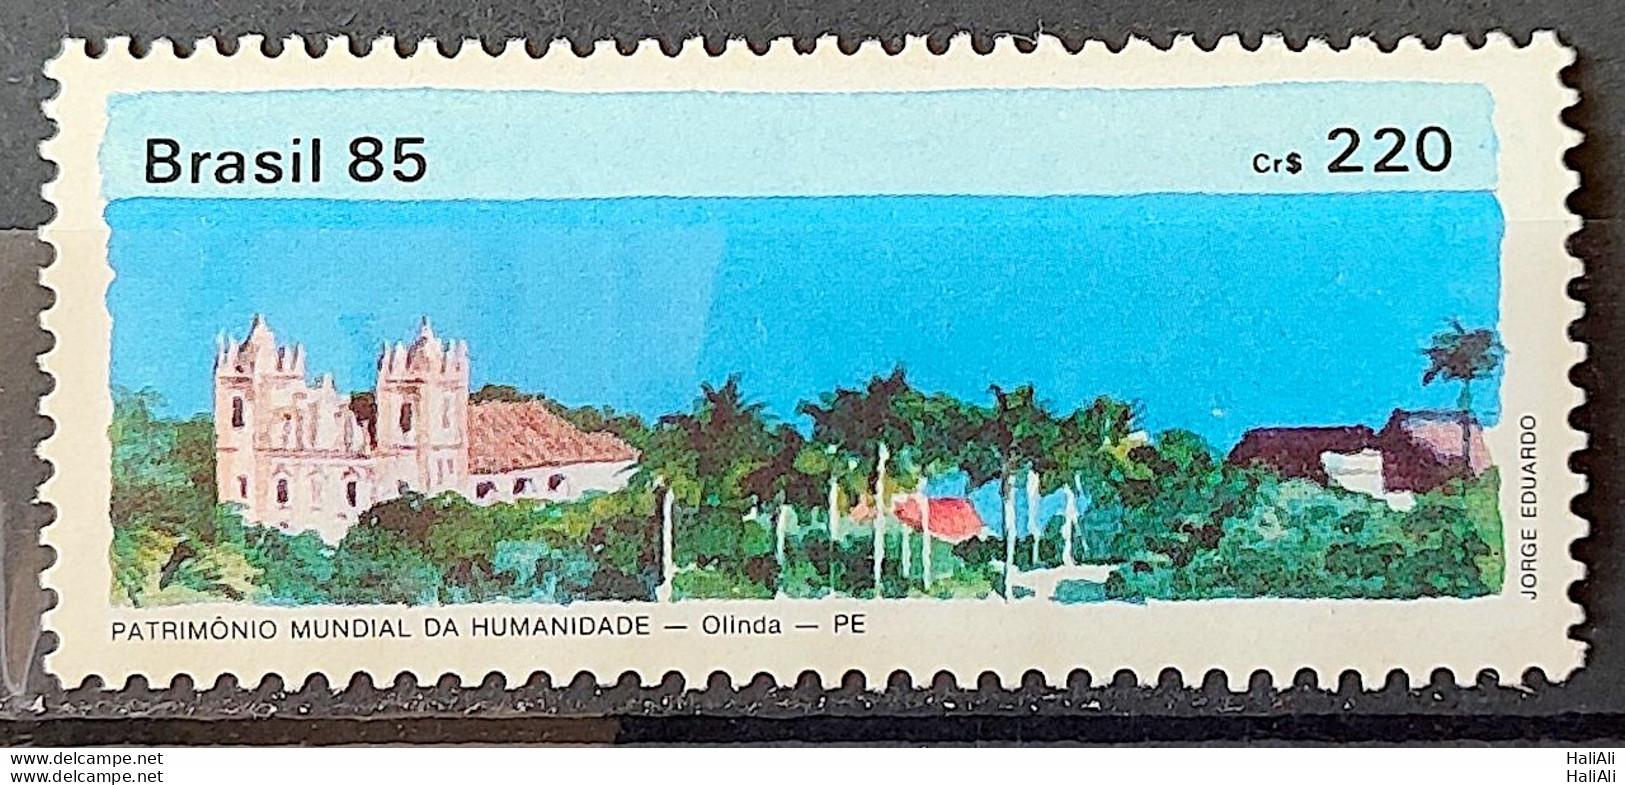 C 1449 Brazil Stamp World Heritage Of Humanity Olinda 1985 - Unused Stamps